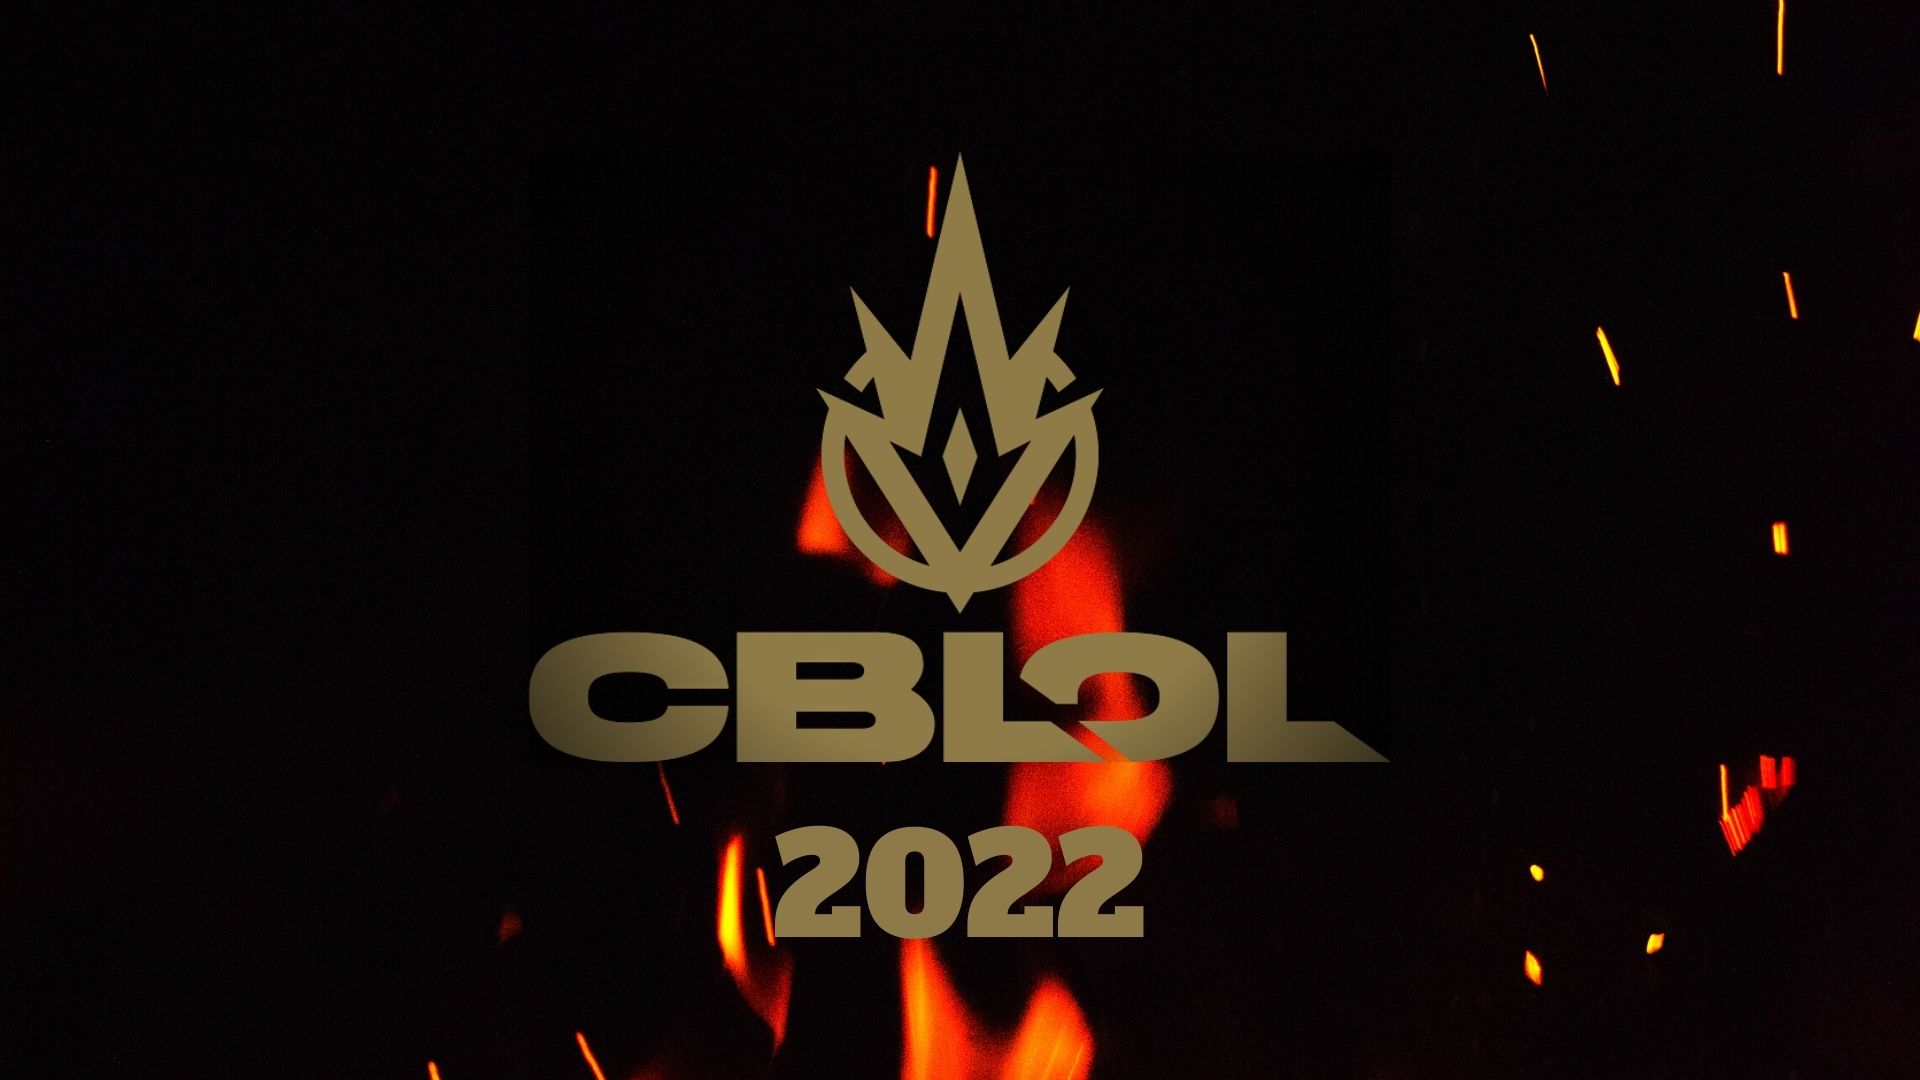 Liderança disputada coloca 5 equipes empatadas no topo do CBLOL 2022.